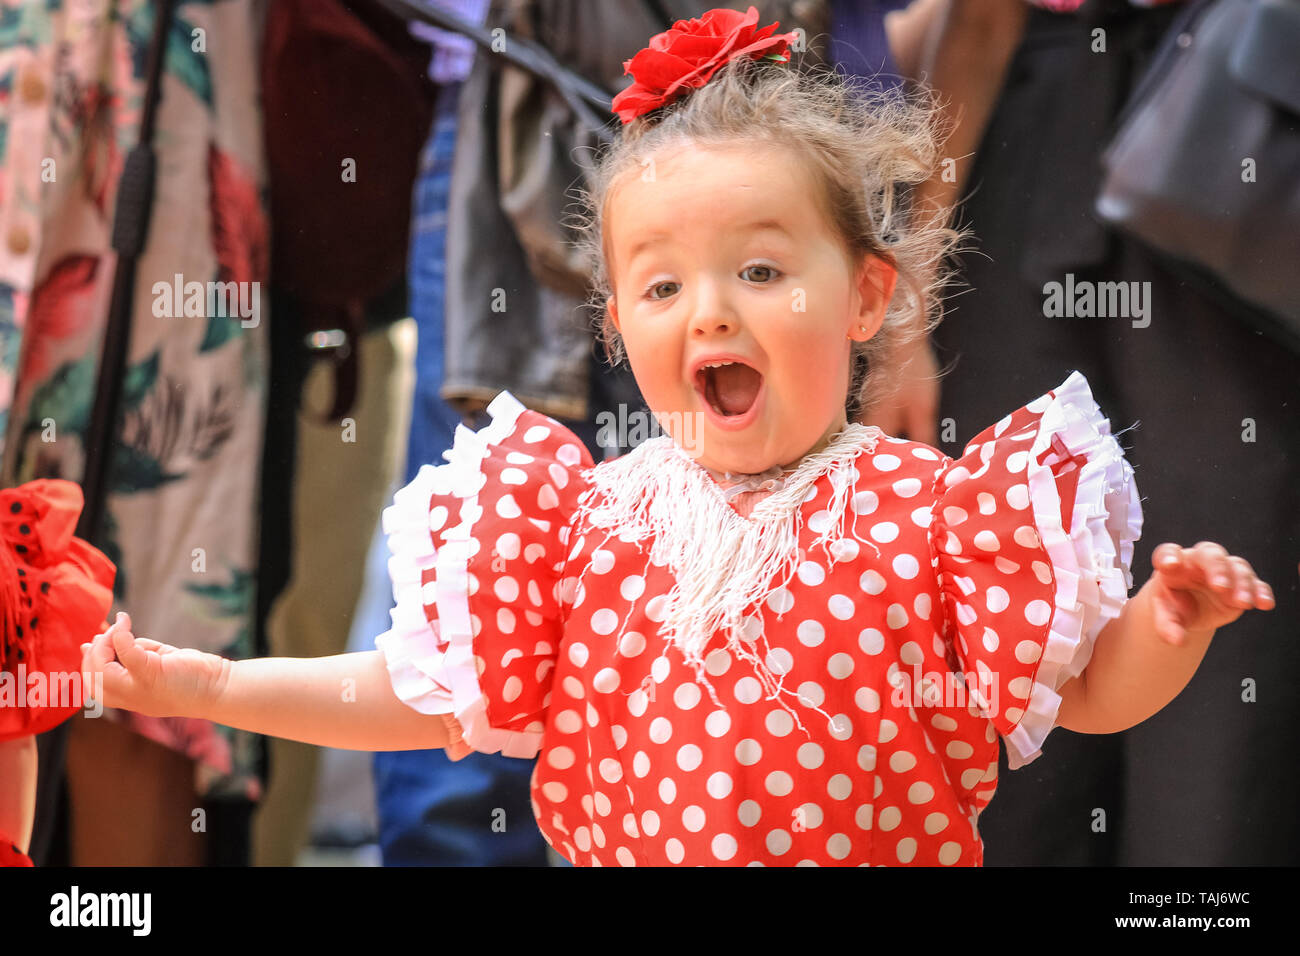 South Bank, Londres, Royaume-Uni - 25 mai 2019. Une jeune fille son premier pratiques étapes flamenco. [Guardian a demandé la permission de photographier] La Feria de Londres est un festival gratuit sur London's South Bank Présentation de la culture espagnole, de la danse, de la musique, du vin et de l'alimentation du 24 au 26 mai. Credit : Imageplotter/Alamy Live News Banque D'Images